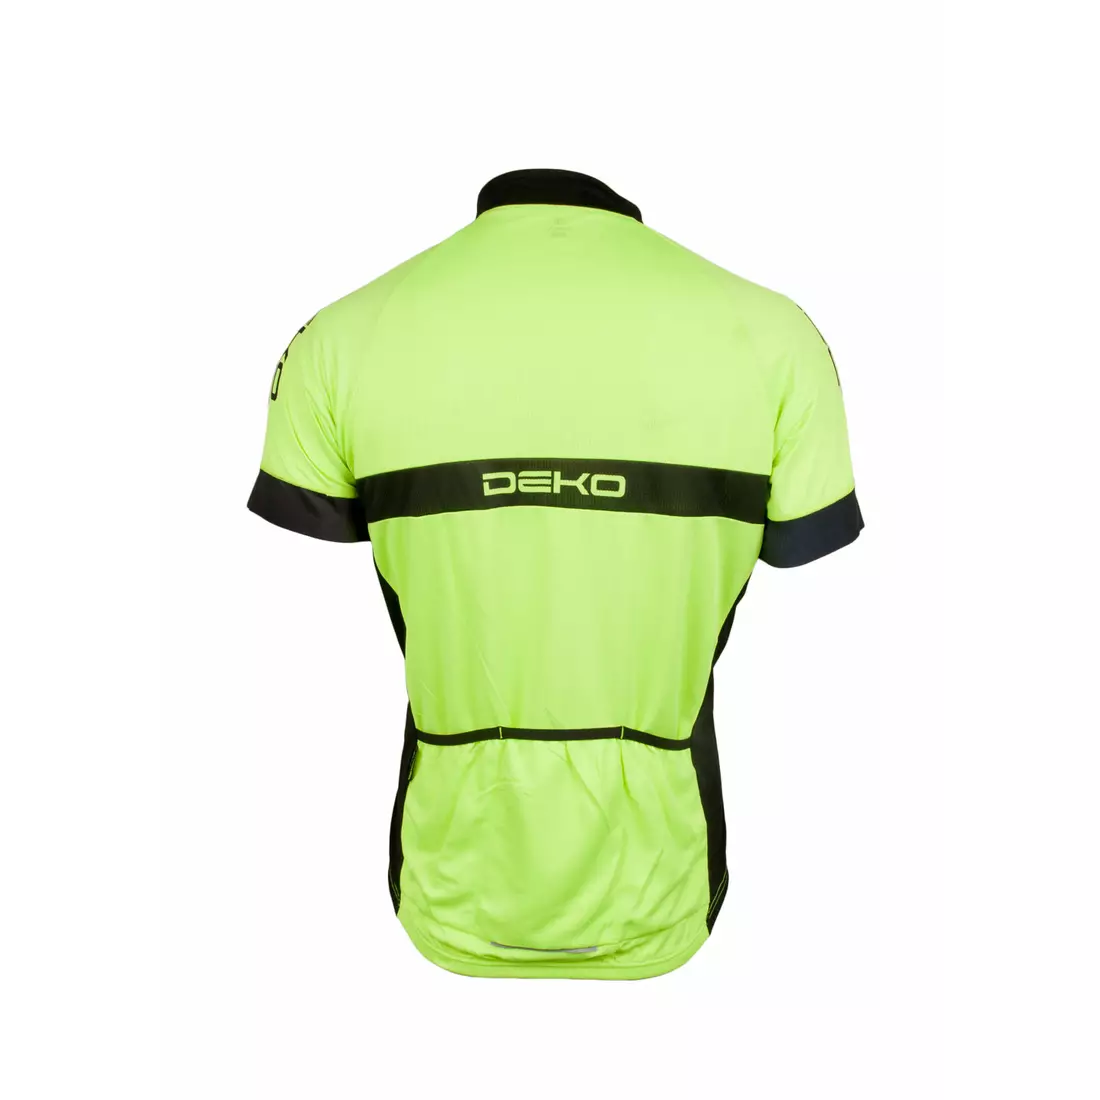 DEKO AIR - pánský fluorový cyklistický dres